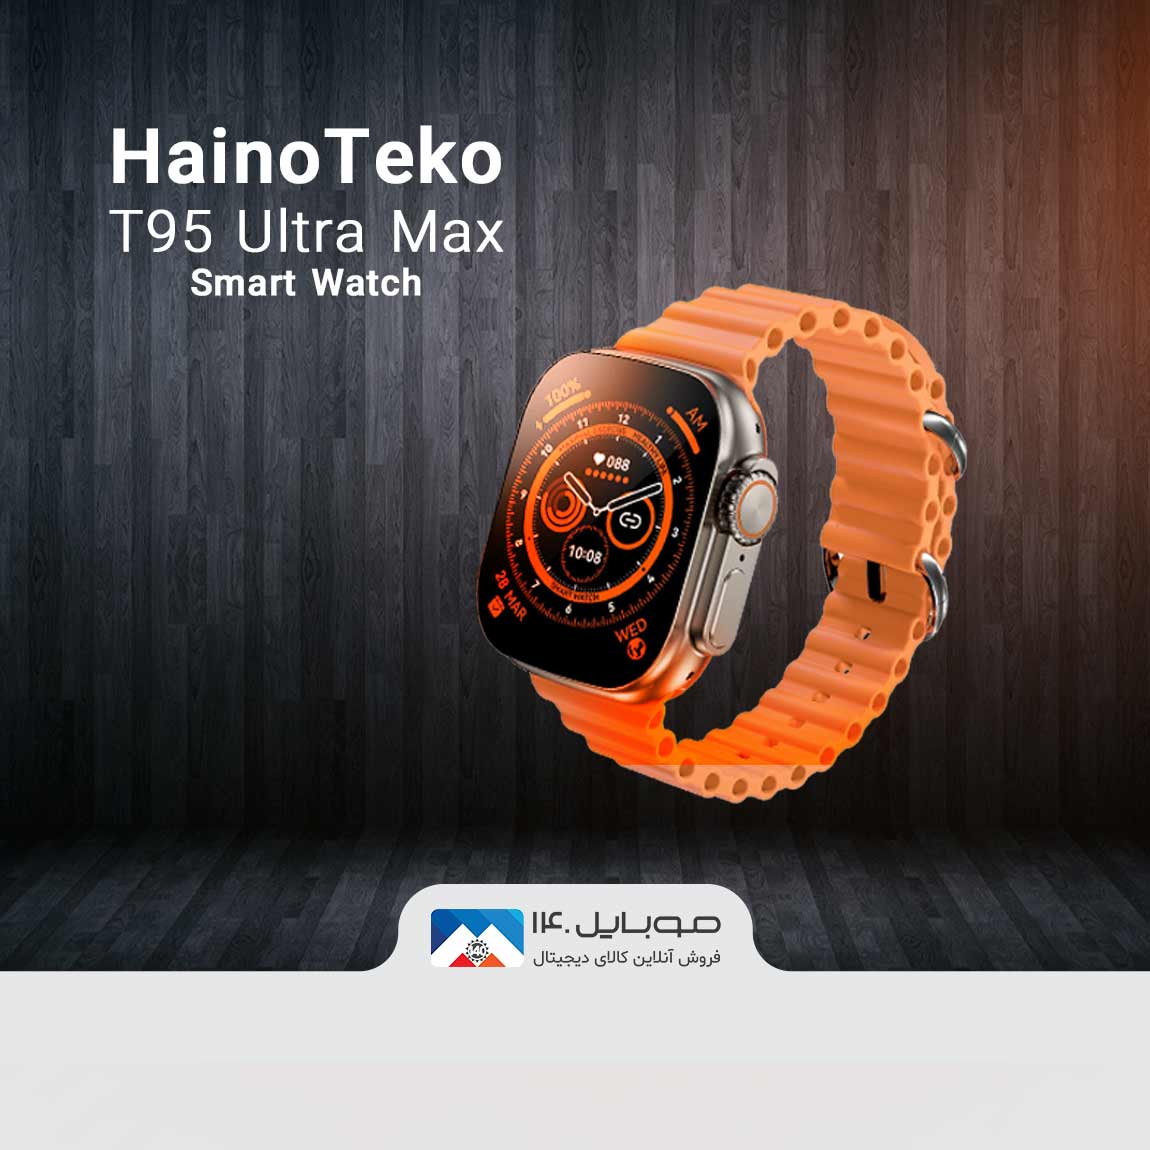 HainoTeko T95 Ultra Max Smart Watch  3